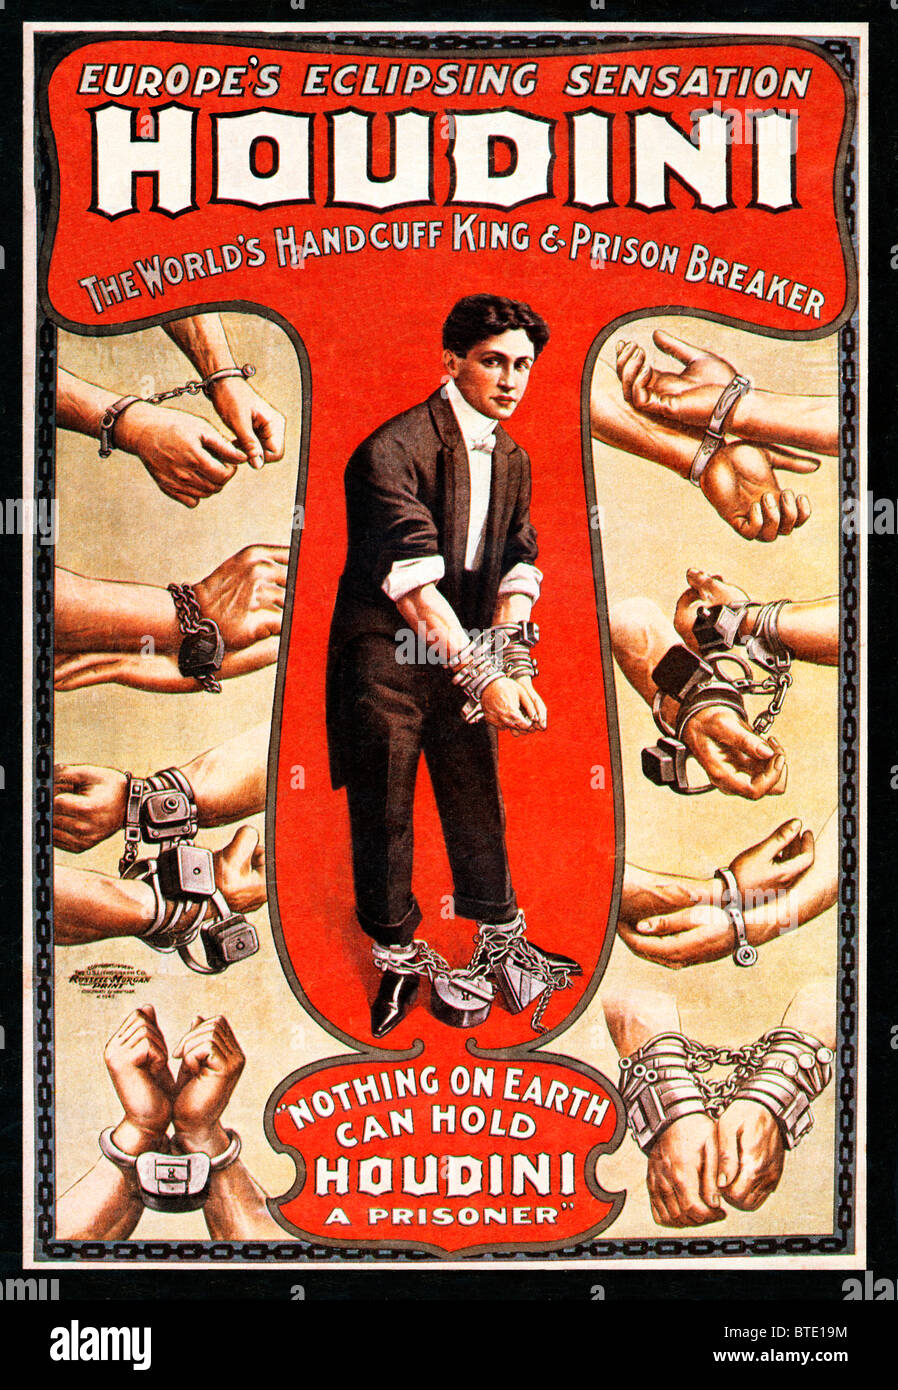 Houdini, 1906 affiche pour le Roi et de menottes mondes Prison Breaker, le Hungarian-American escapologist cour suprême Banque D'Images